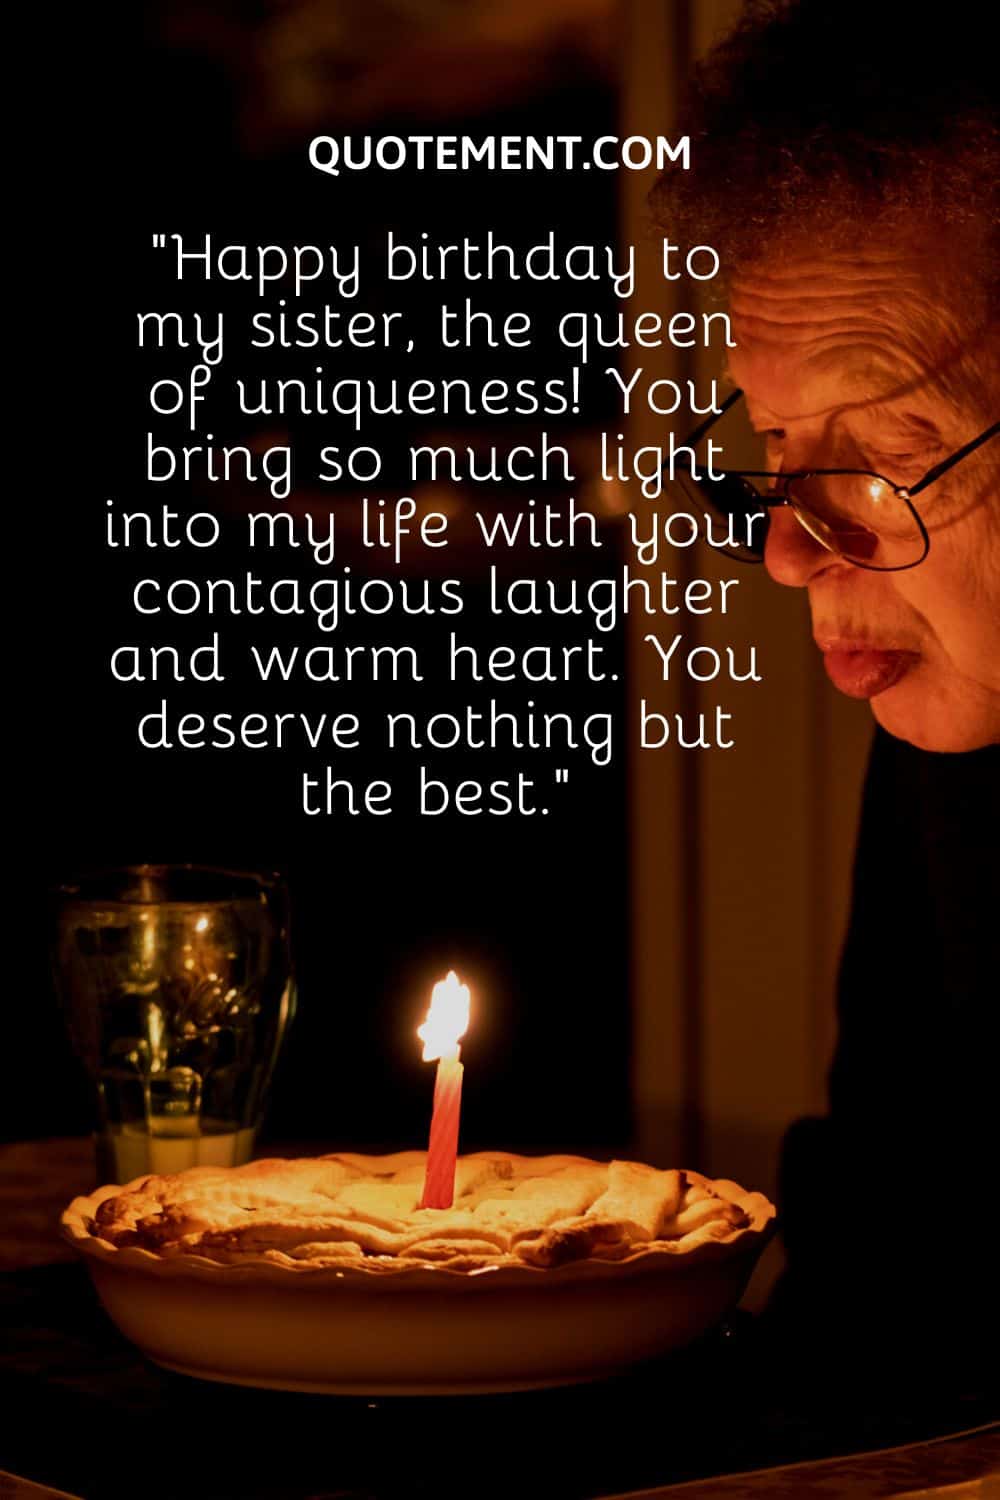 una mujer mayor soplando una vela sobre una tarta